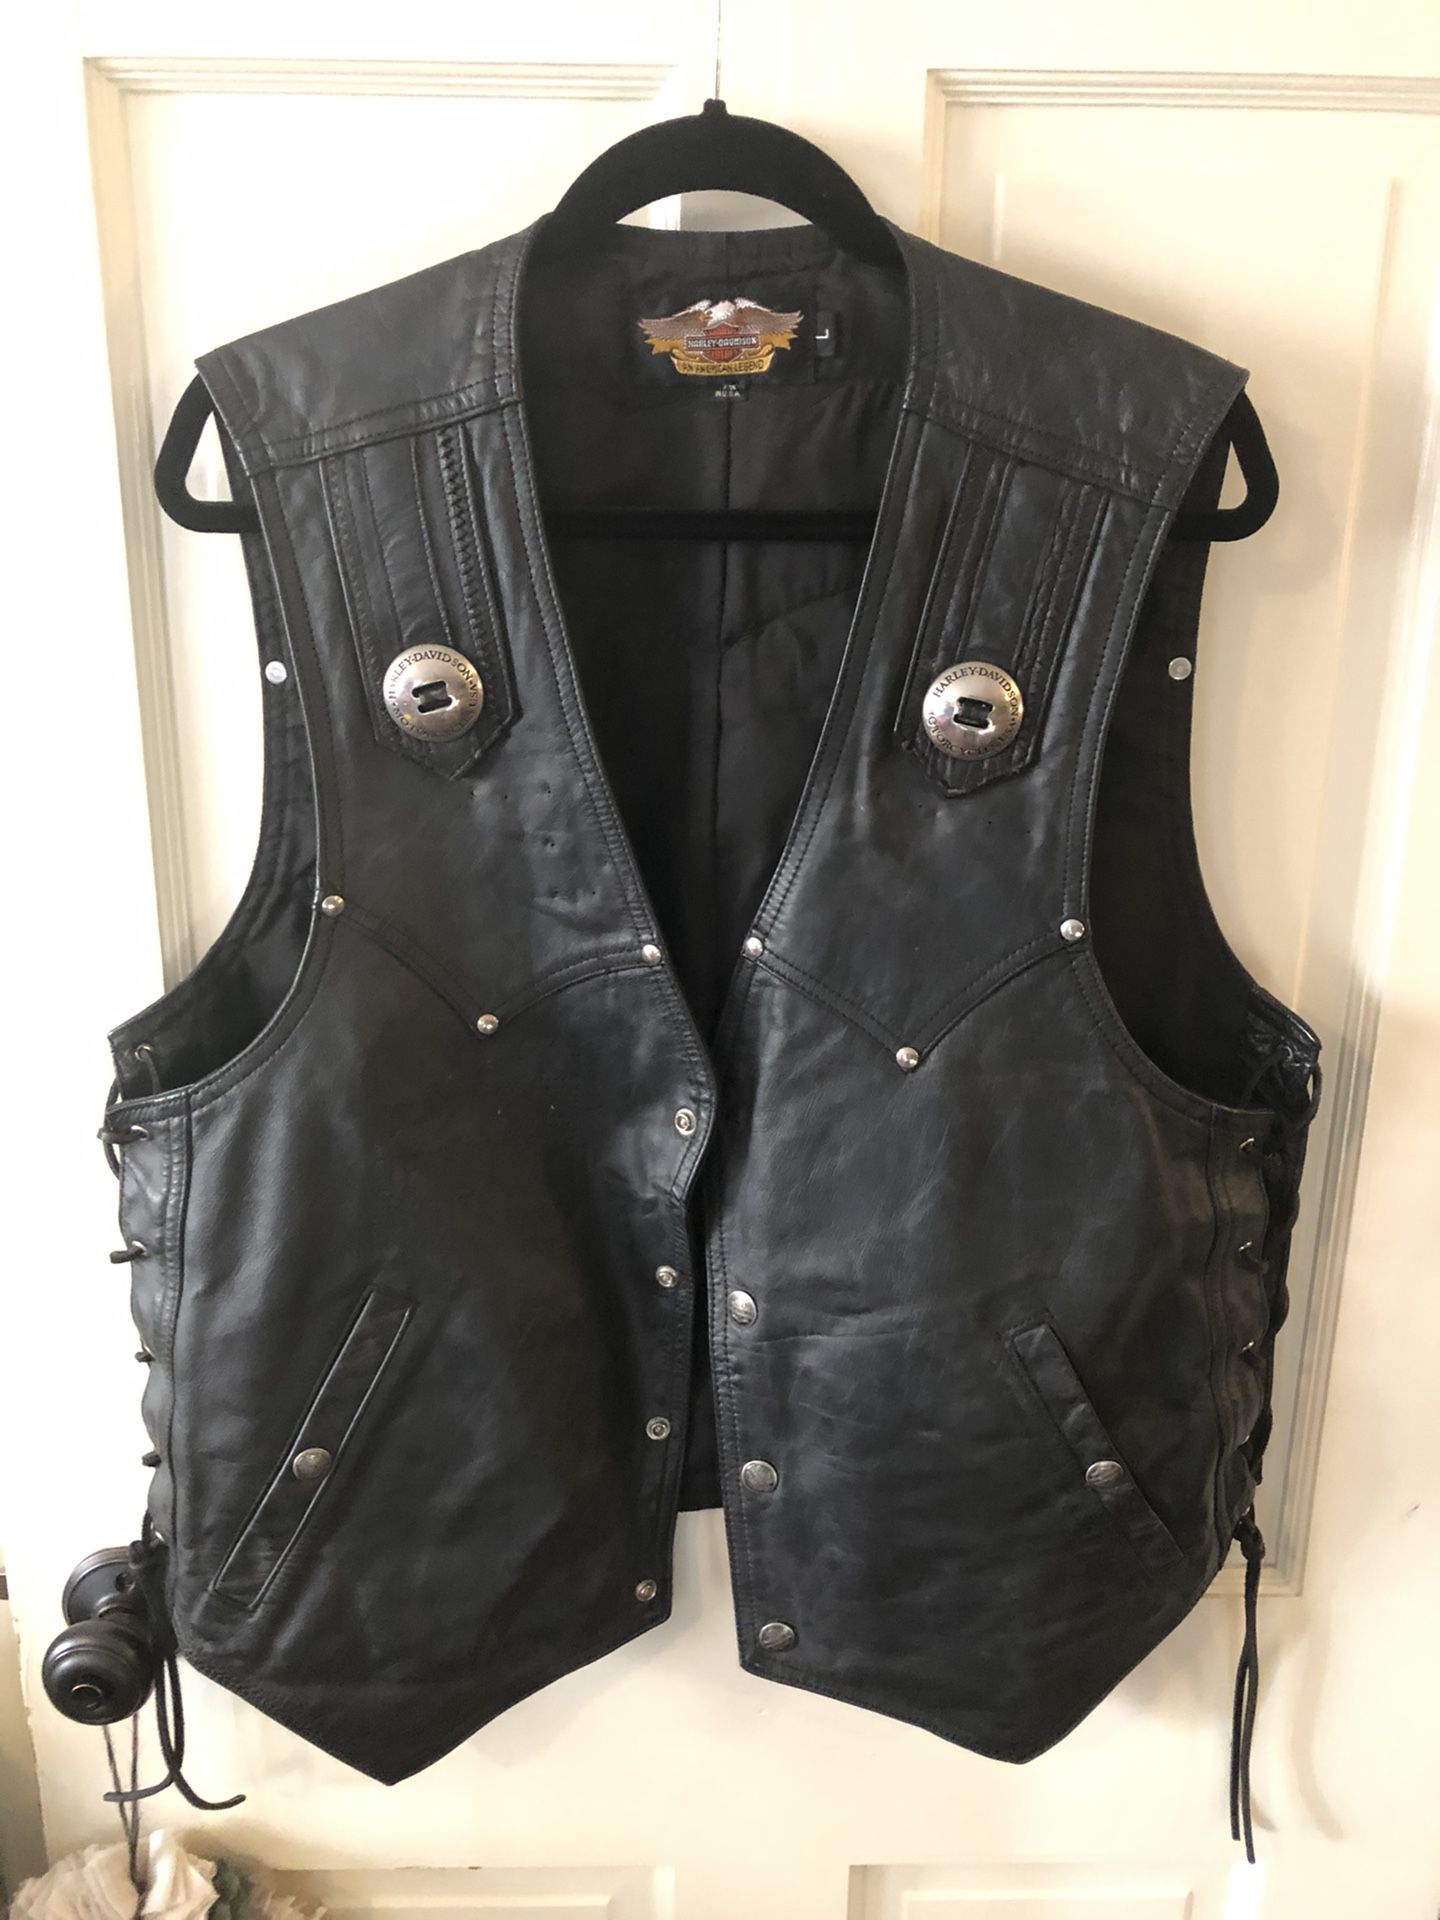 Vintage Harley Davidson leather vest. Size men’s Large